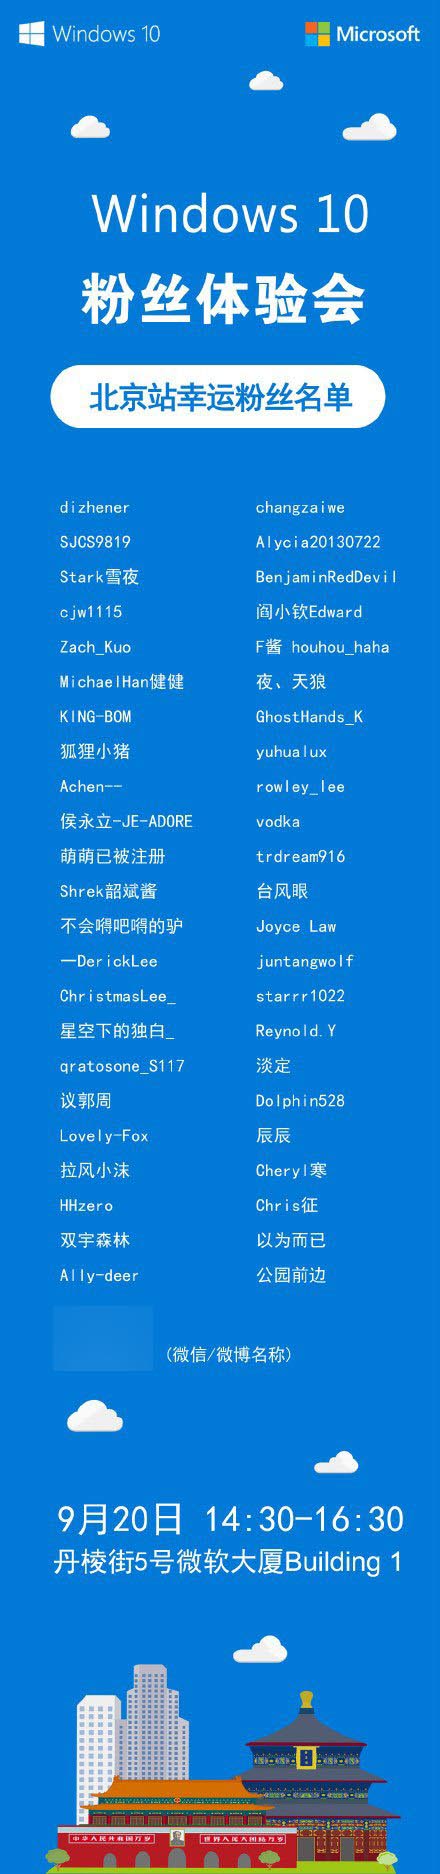 9月20日微软中国Win10粉丝体验会北京站粉丝名单揭晓